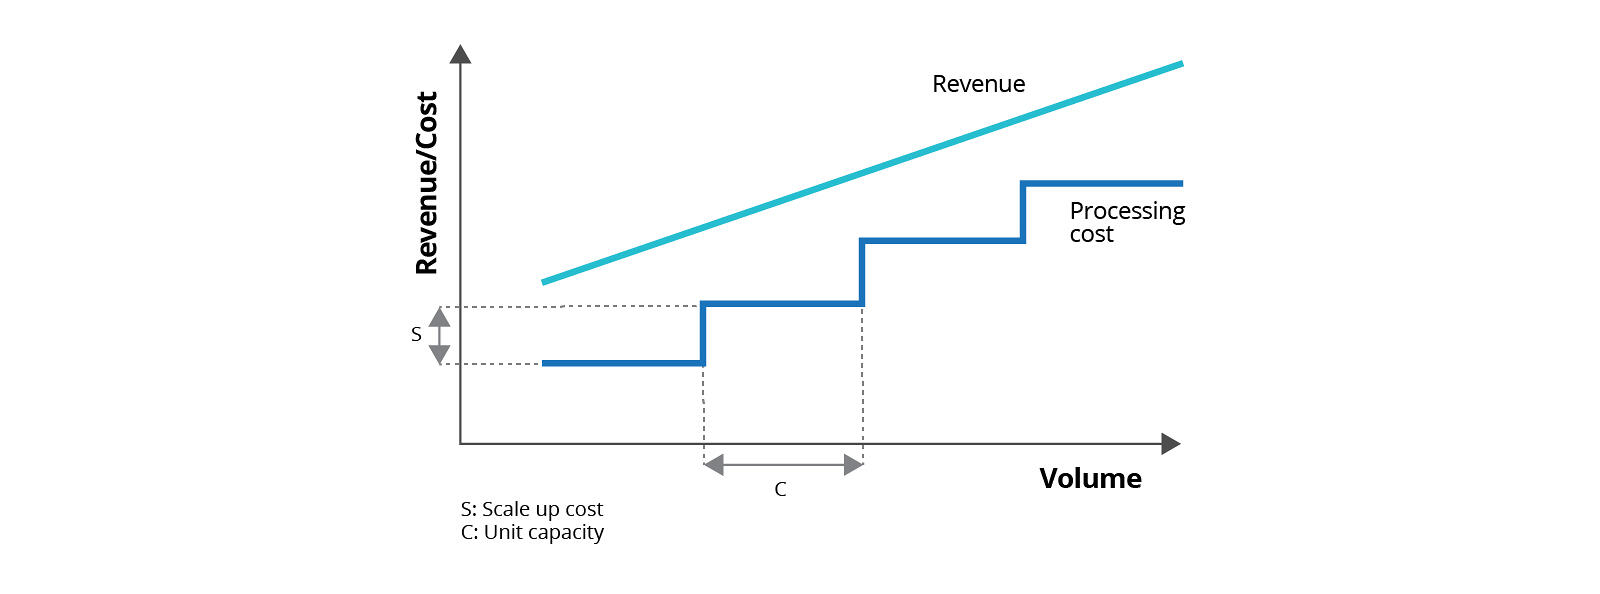 Volume vs Revenue/Cost